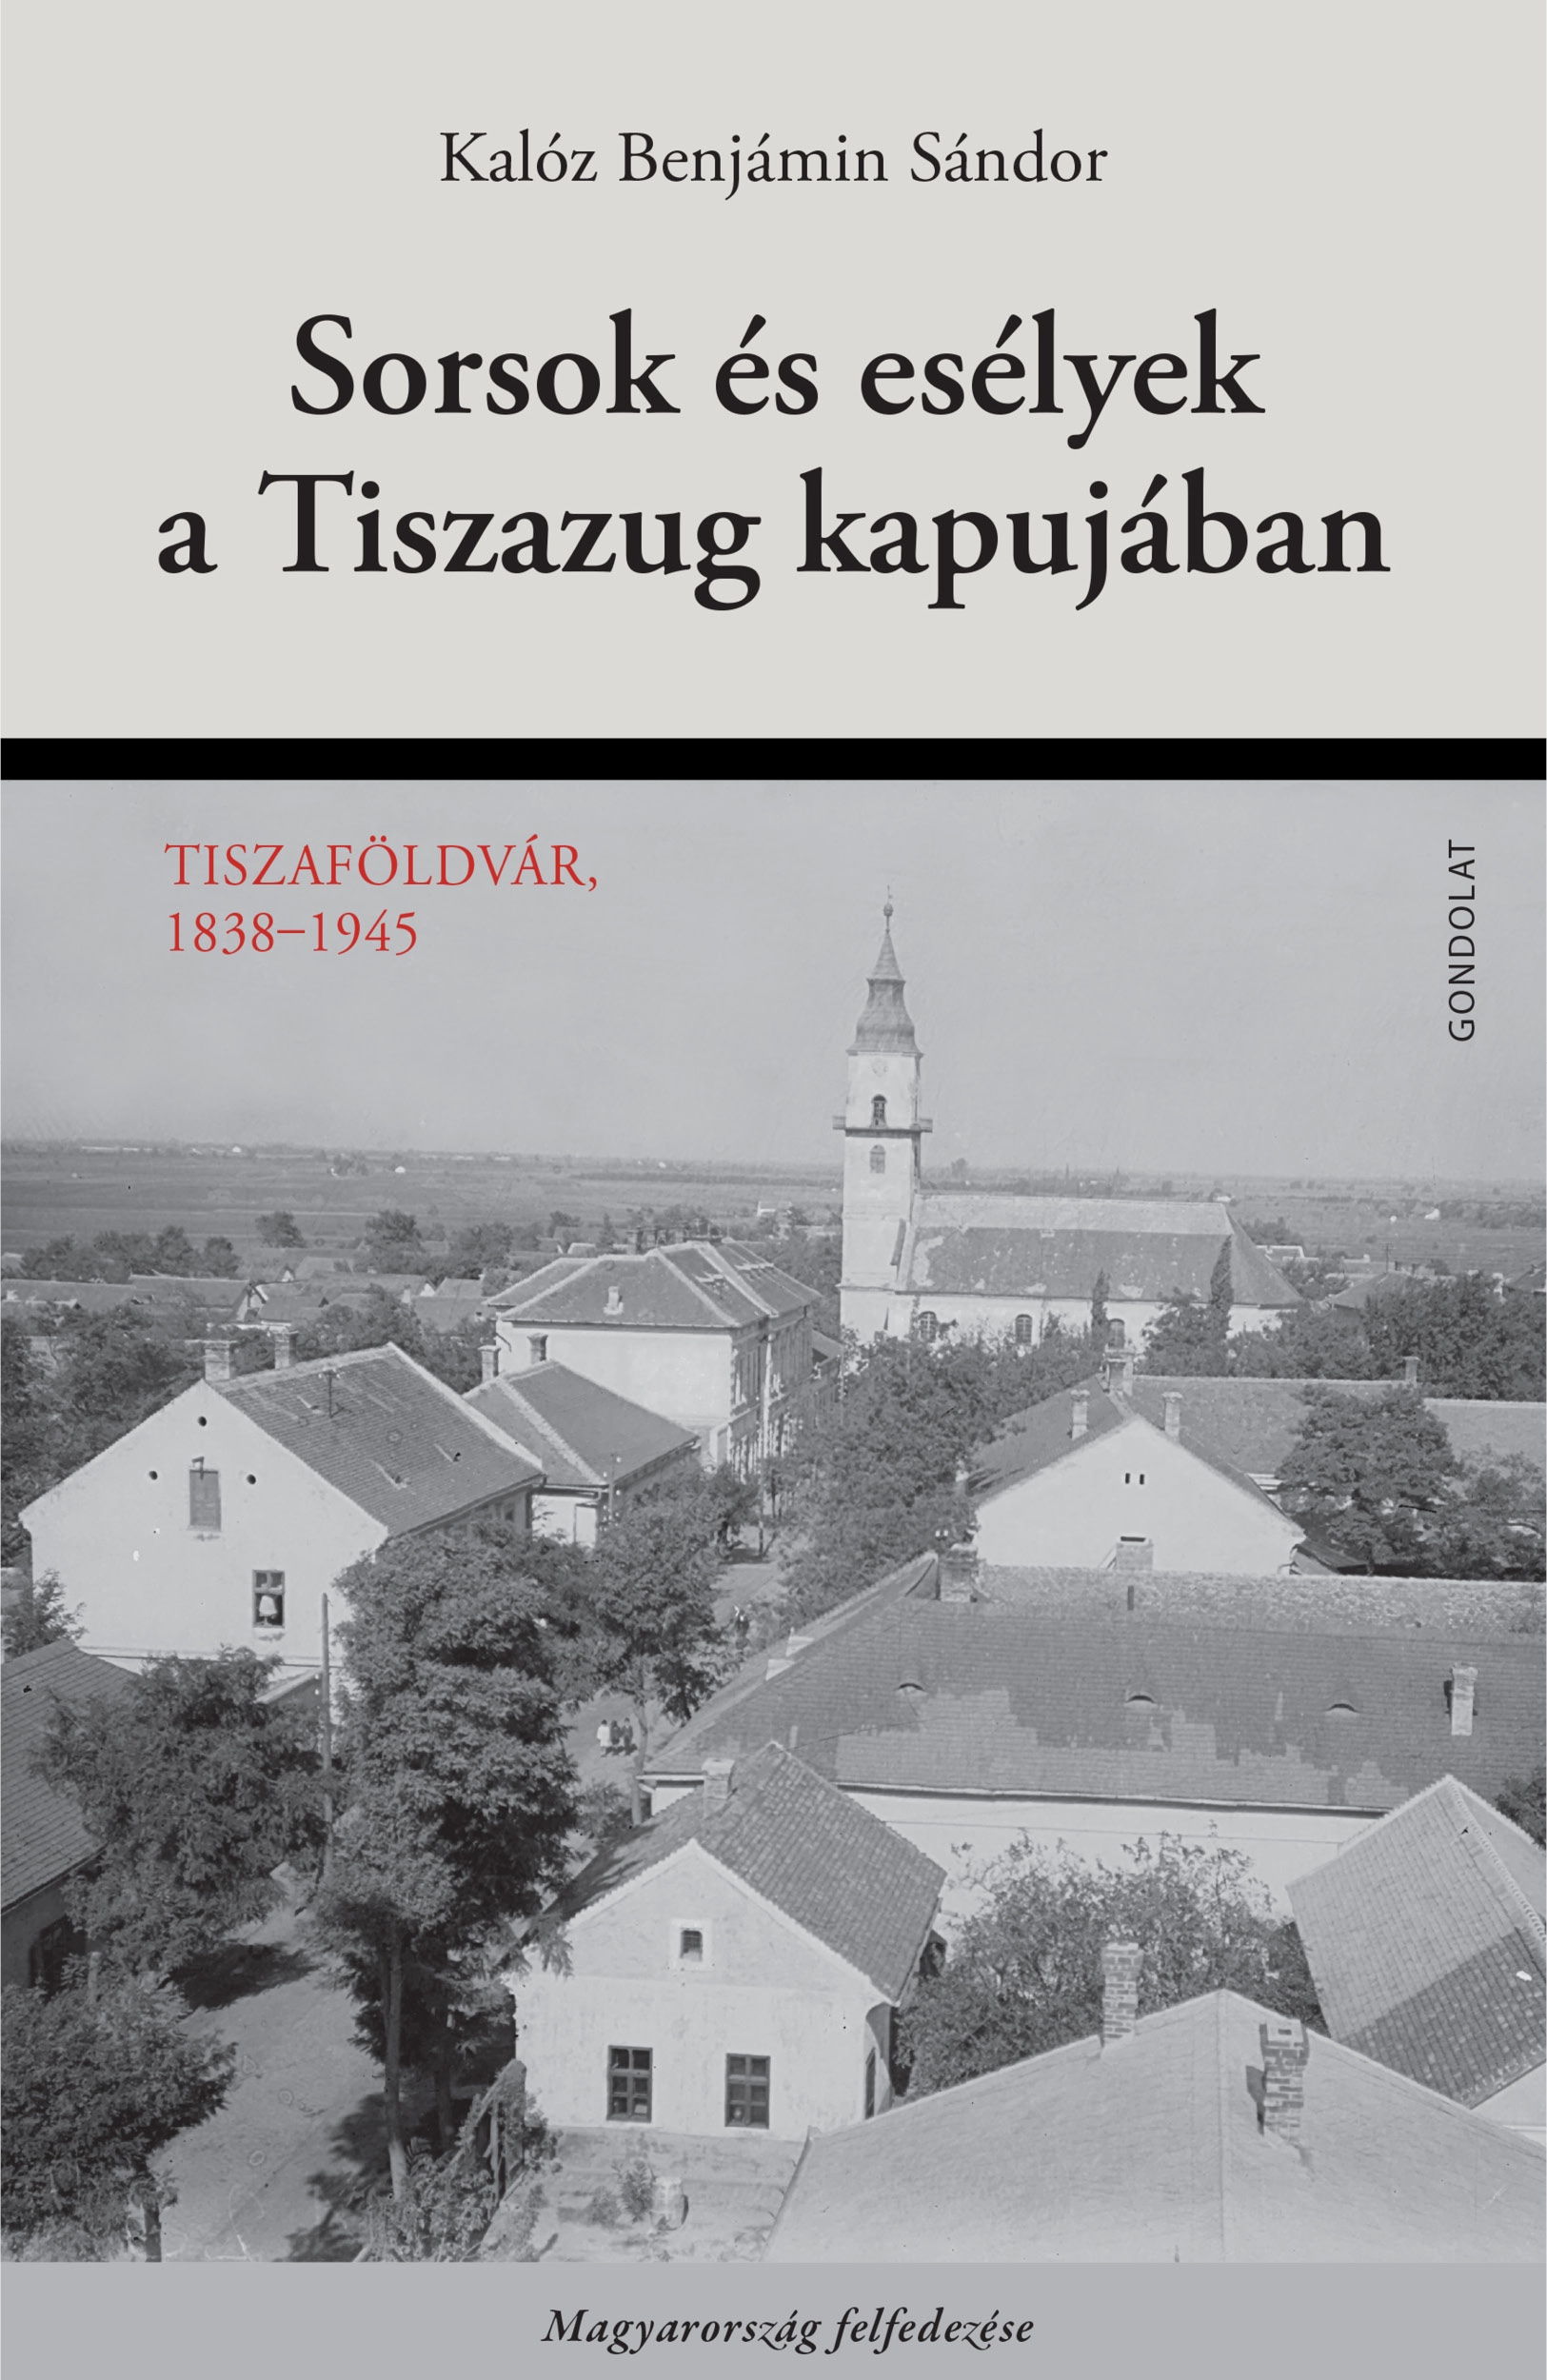 Sorsok és esélyek a Tiszazug kapujában. Tiszaföldvár, 1838–1945